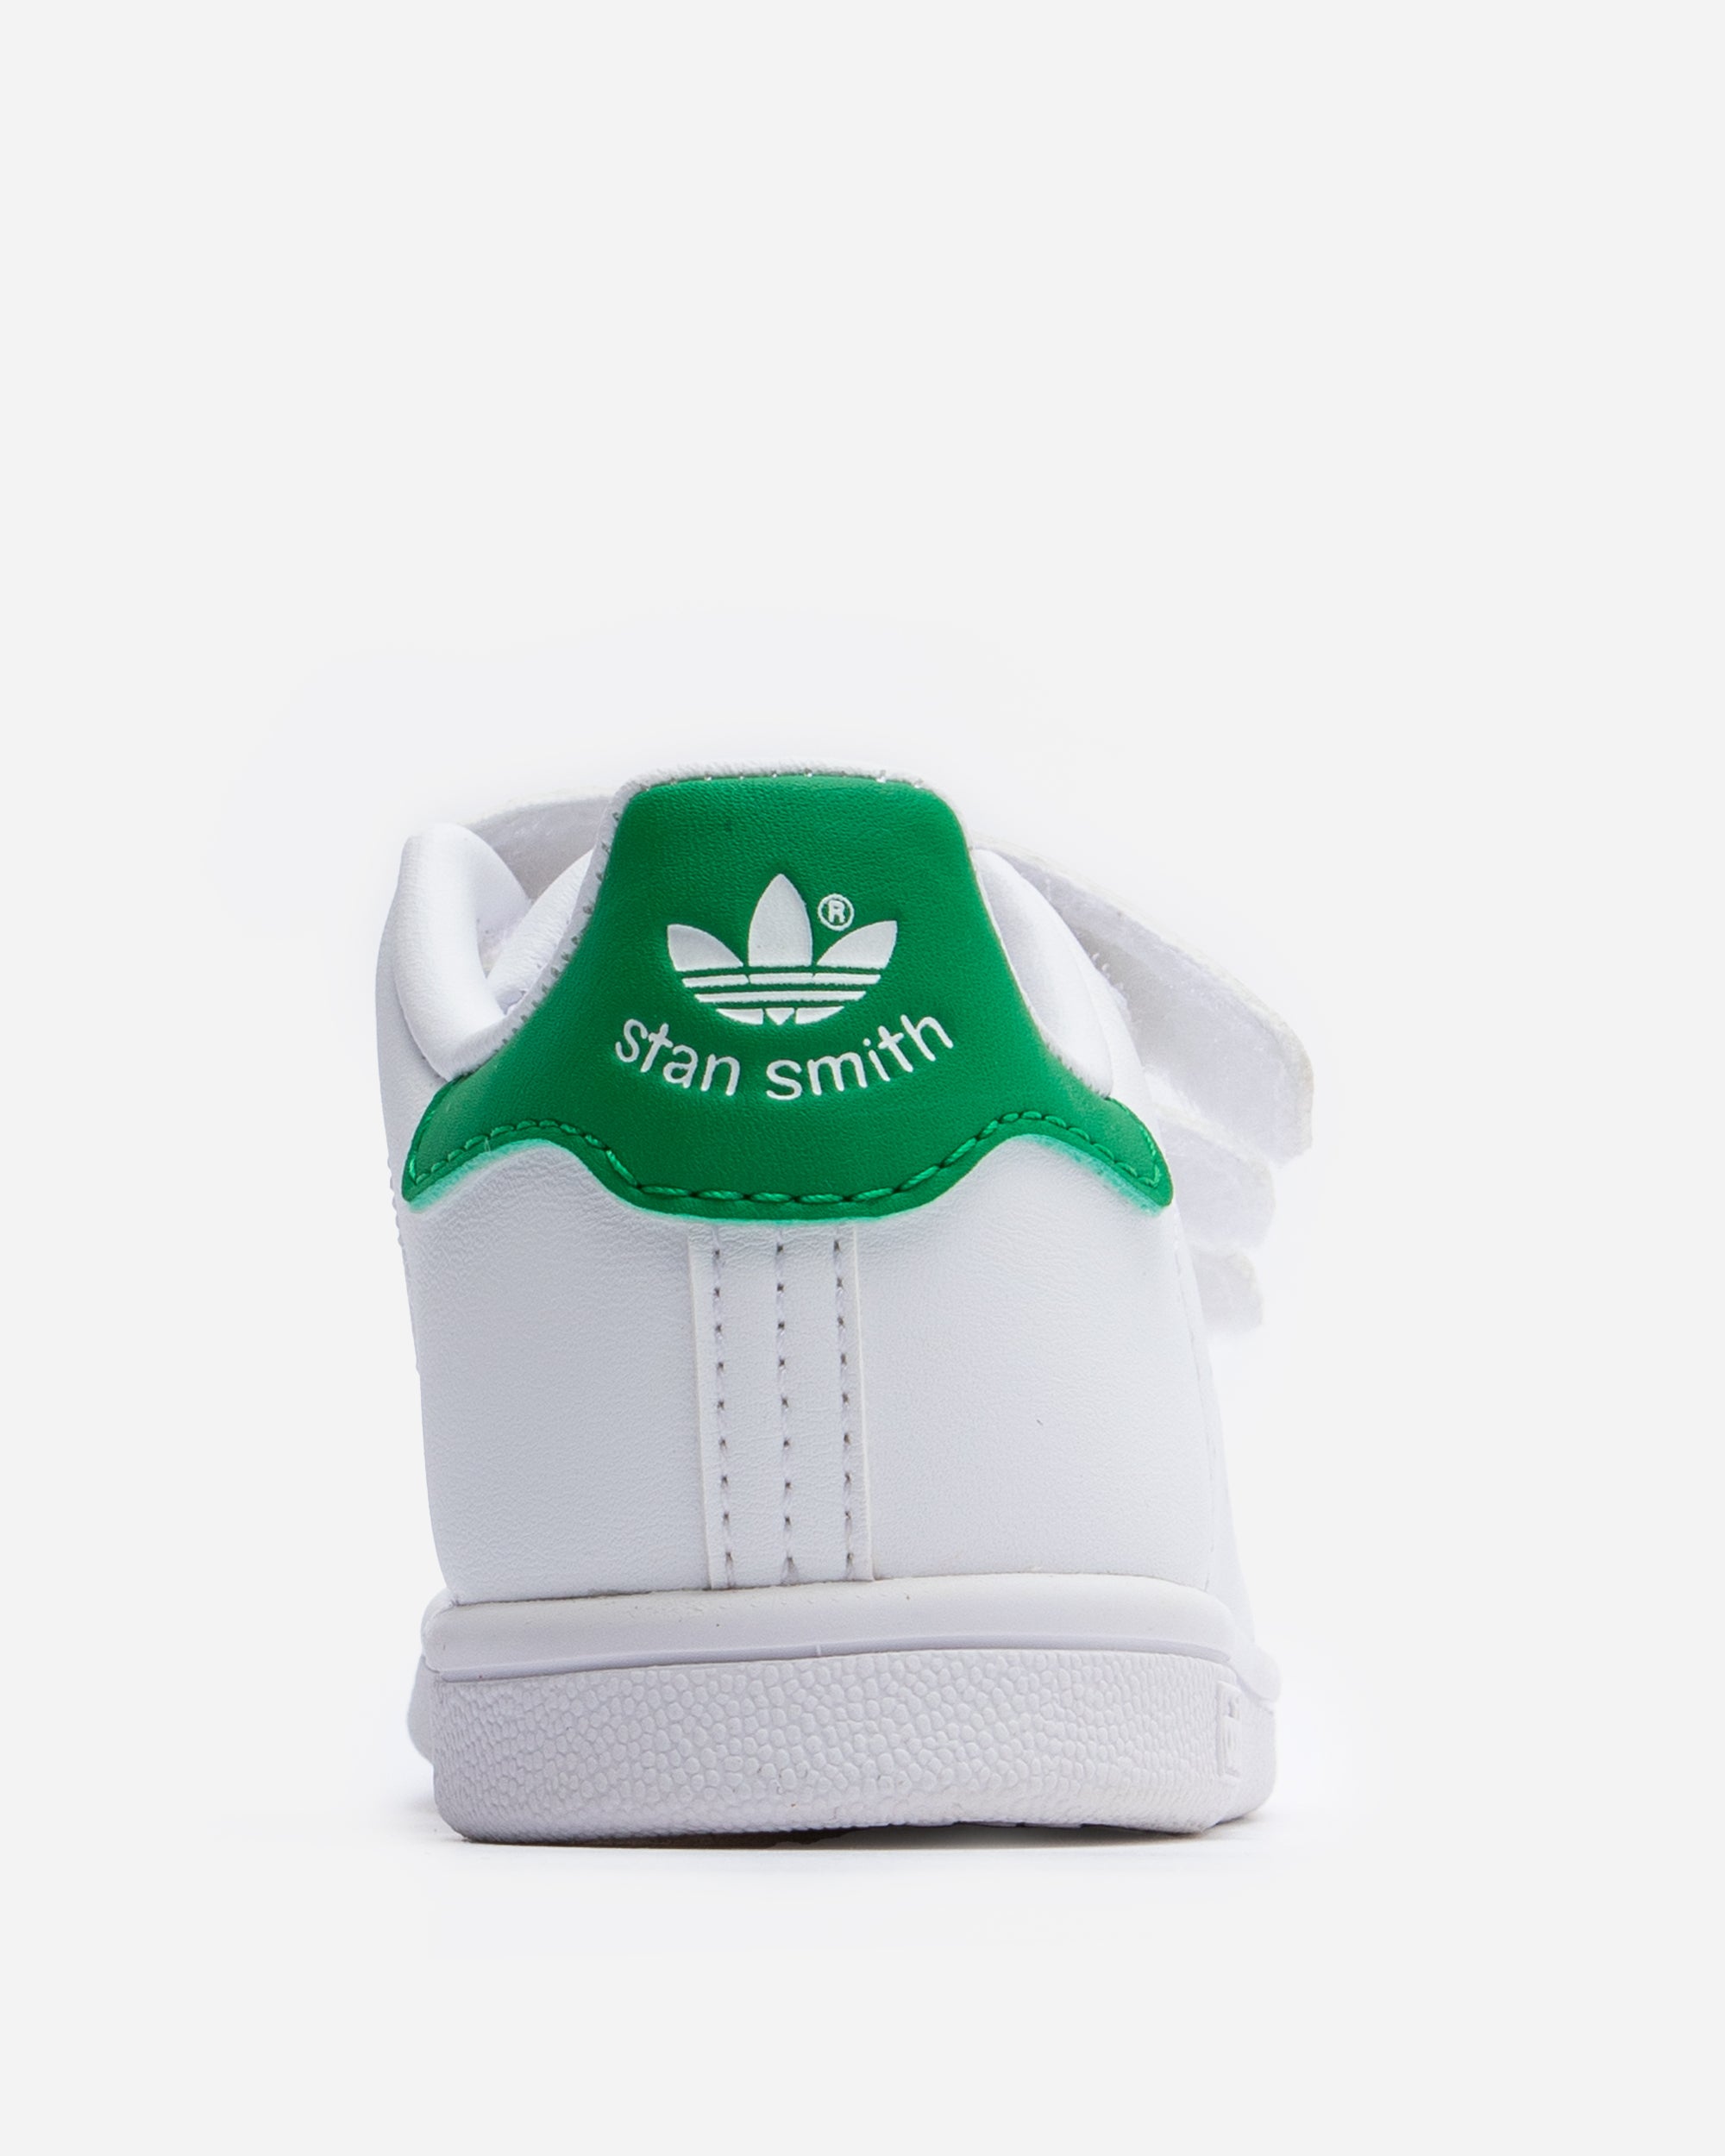 Adidas Ori Stan Smith (Toddler) White/Green FX7532